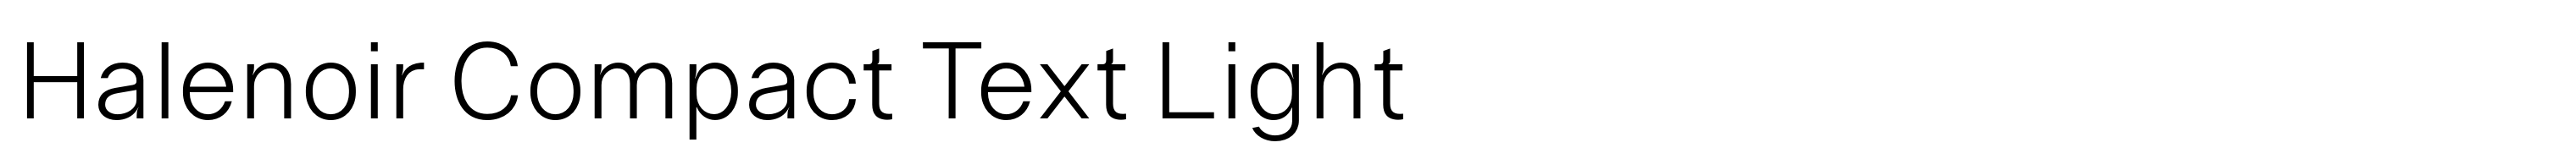 Halenoir Compact Text Light